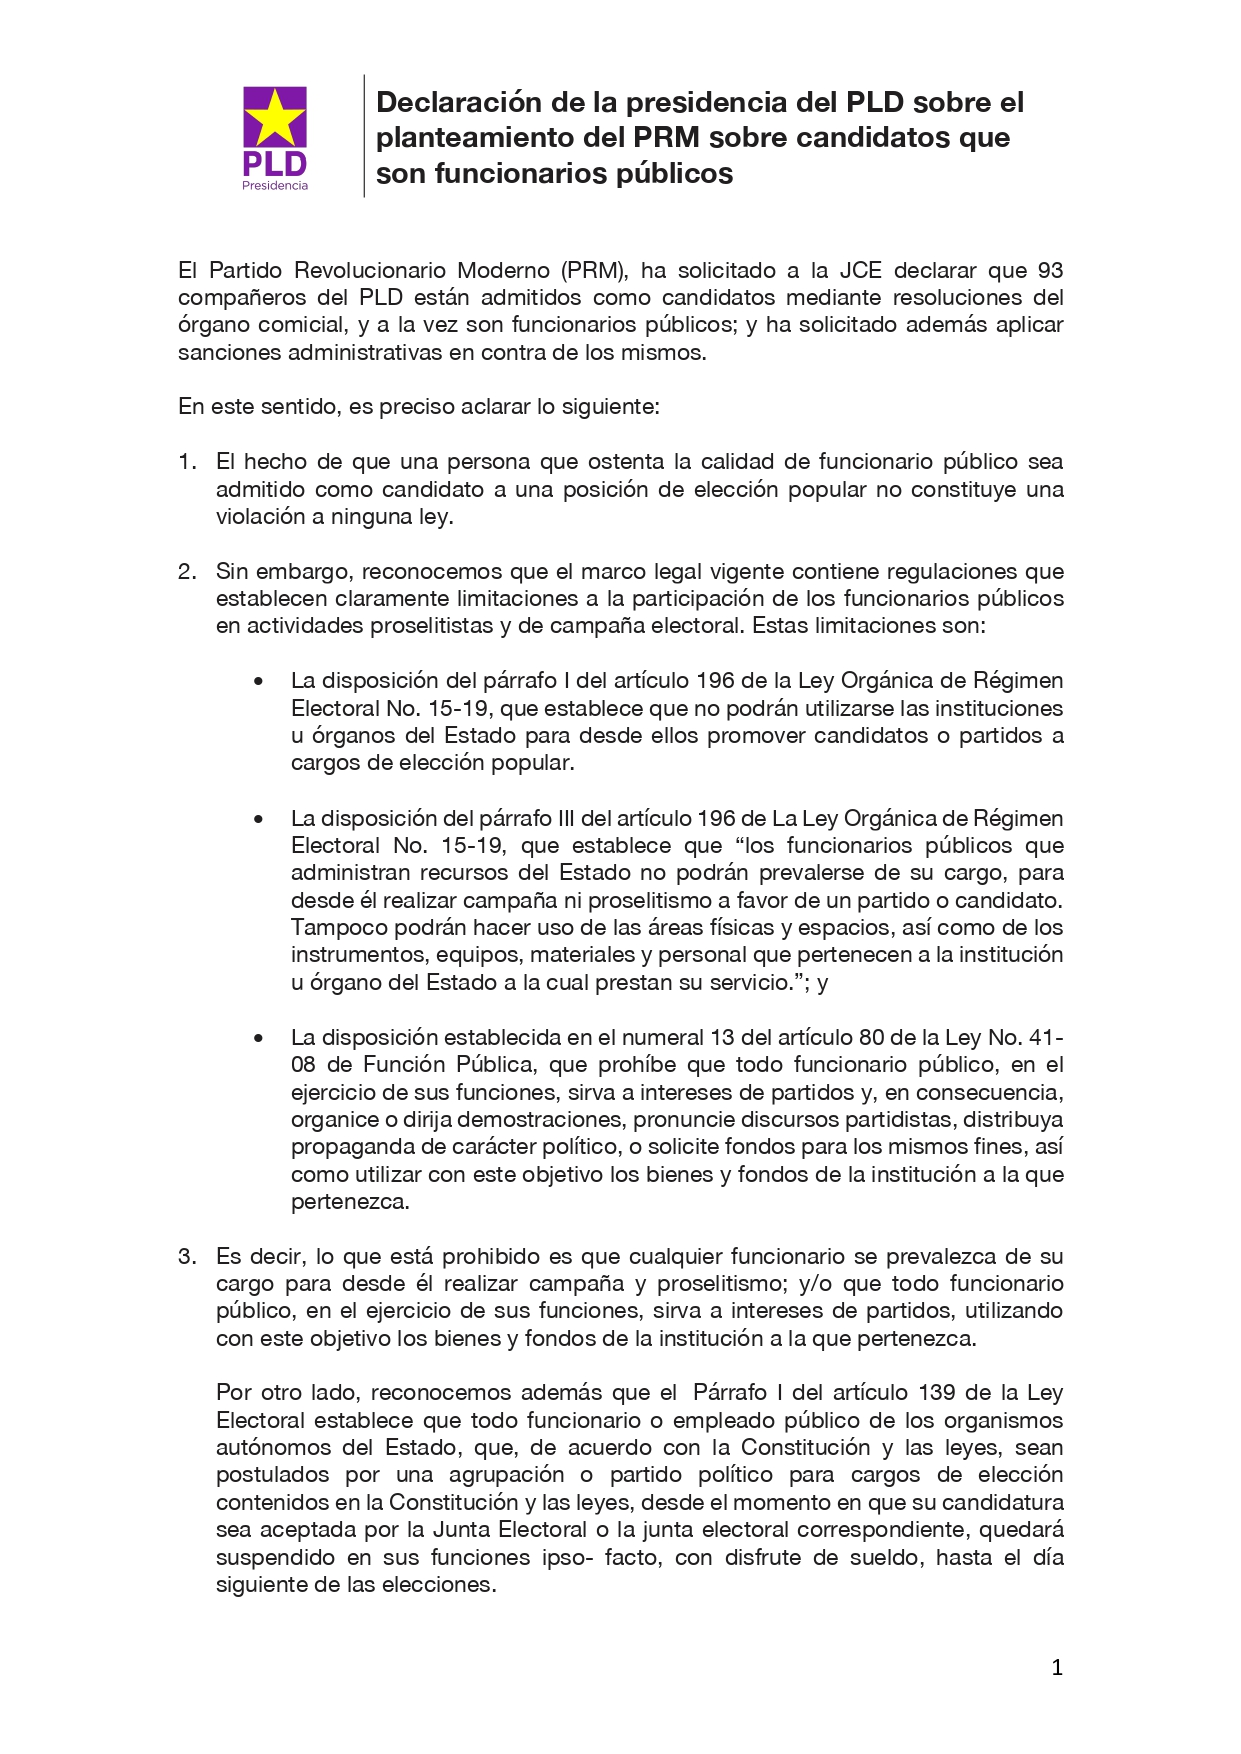 2020-05-31 Declaración de la presidencia del PLD sobre el planteamiento del PRM sobre candidatos que son funcionarios publicos_page-0001